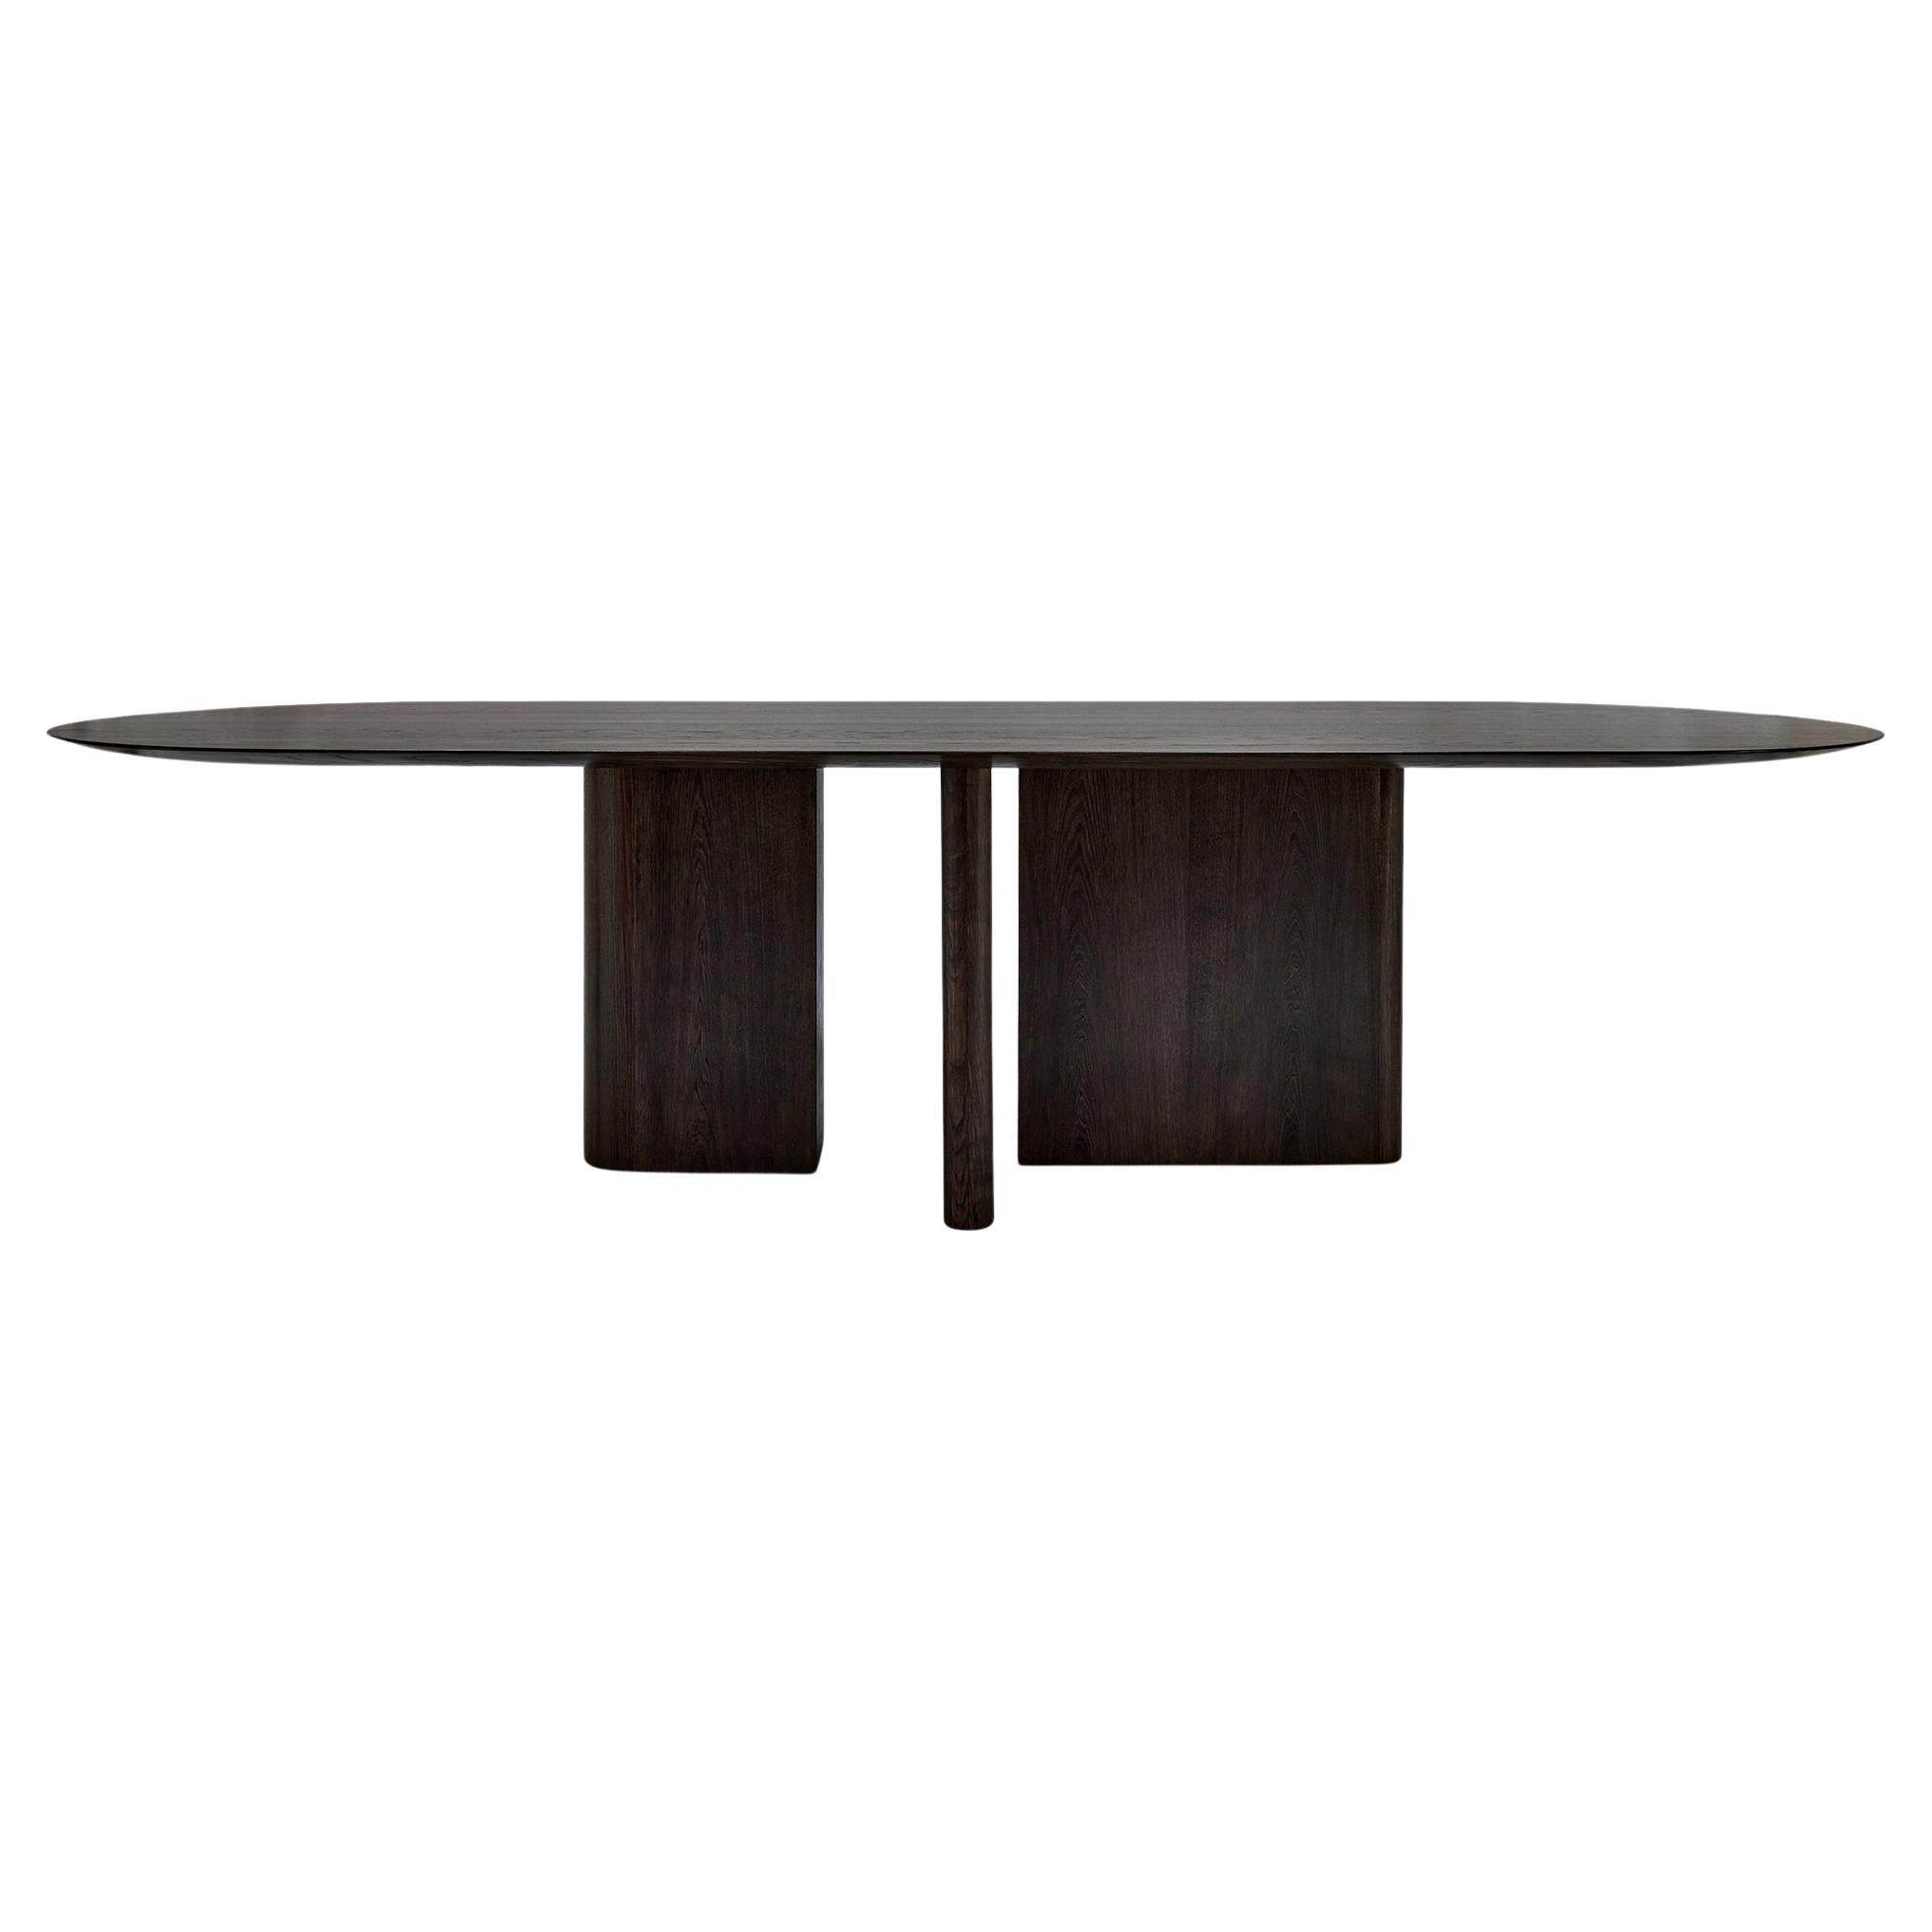 MG210 Table de salle à manger en chêne Dark Nature par Malte Gormsen design by Norm Architects